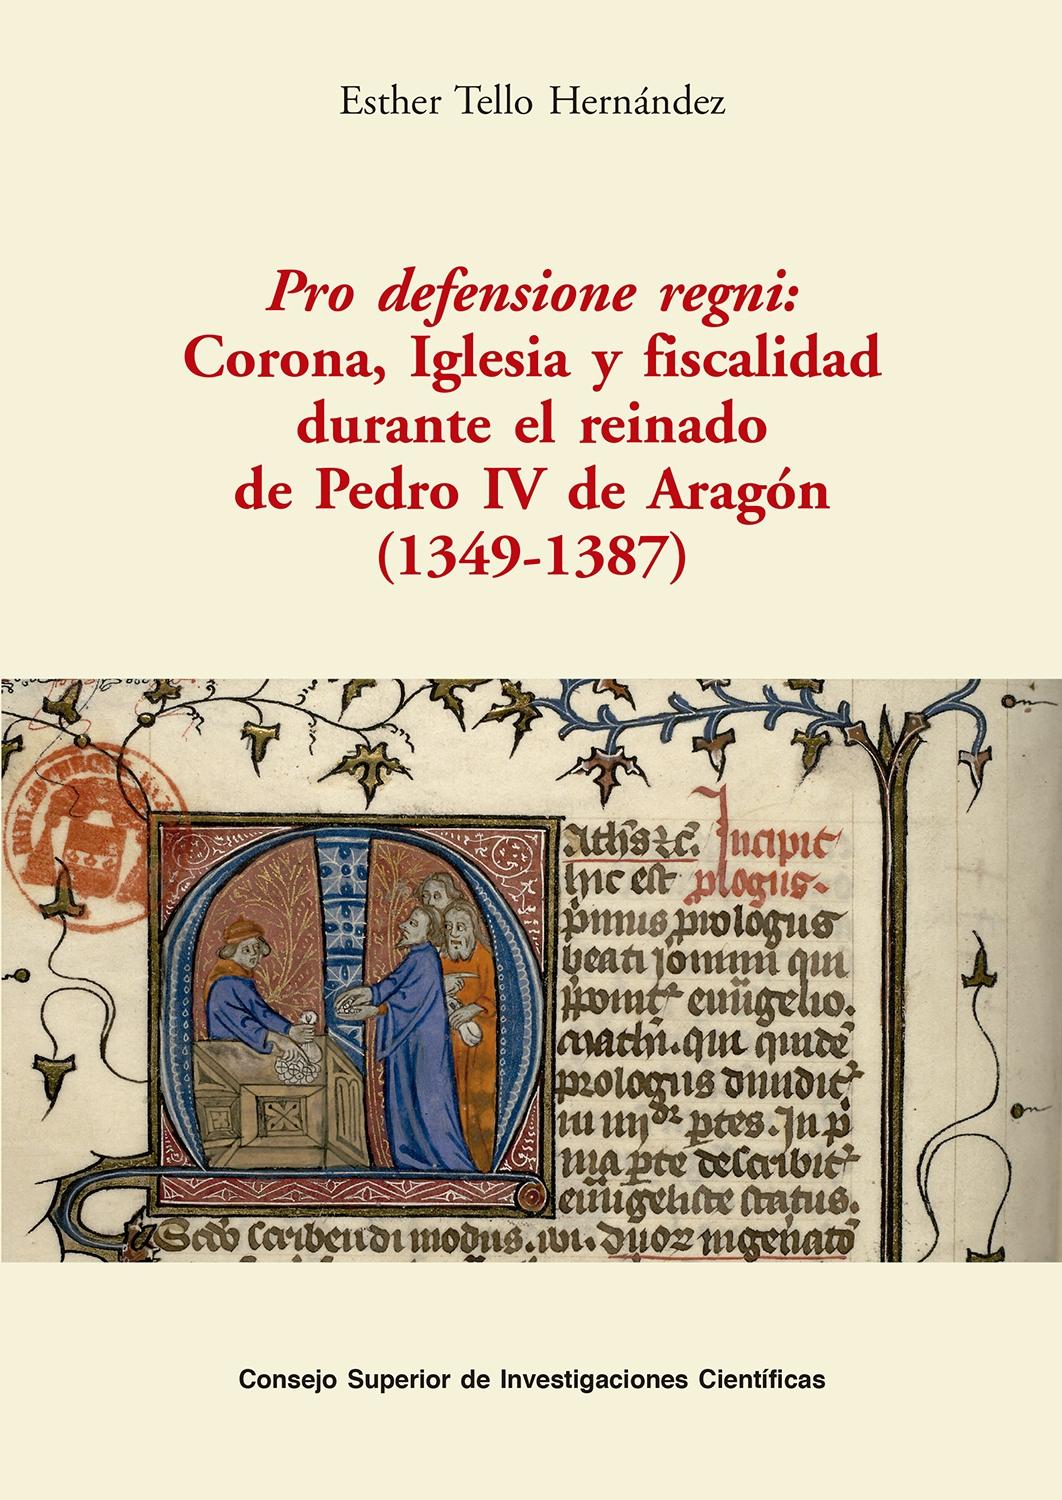 Pro defensione regni: Corona, Iglesia y fiscalidad durante el reinado de Pedro IV de Aragón "(1349-1387)". 